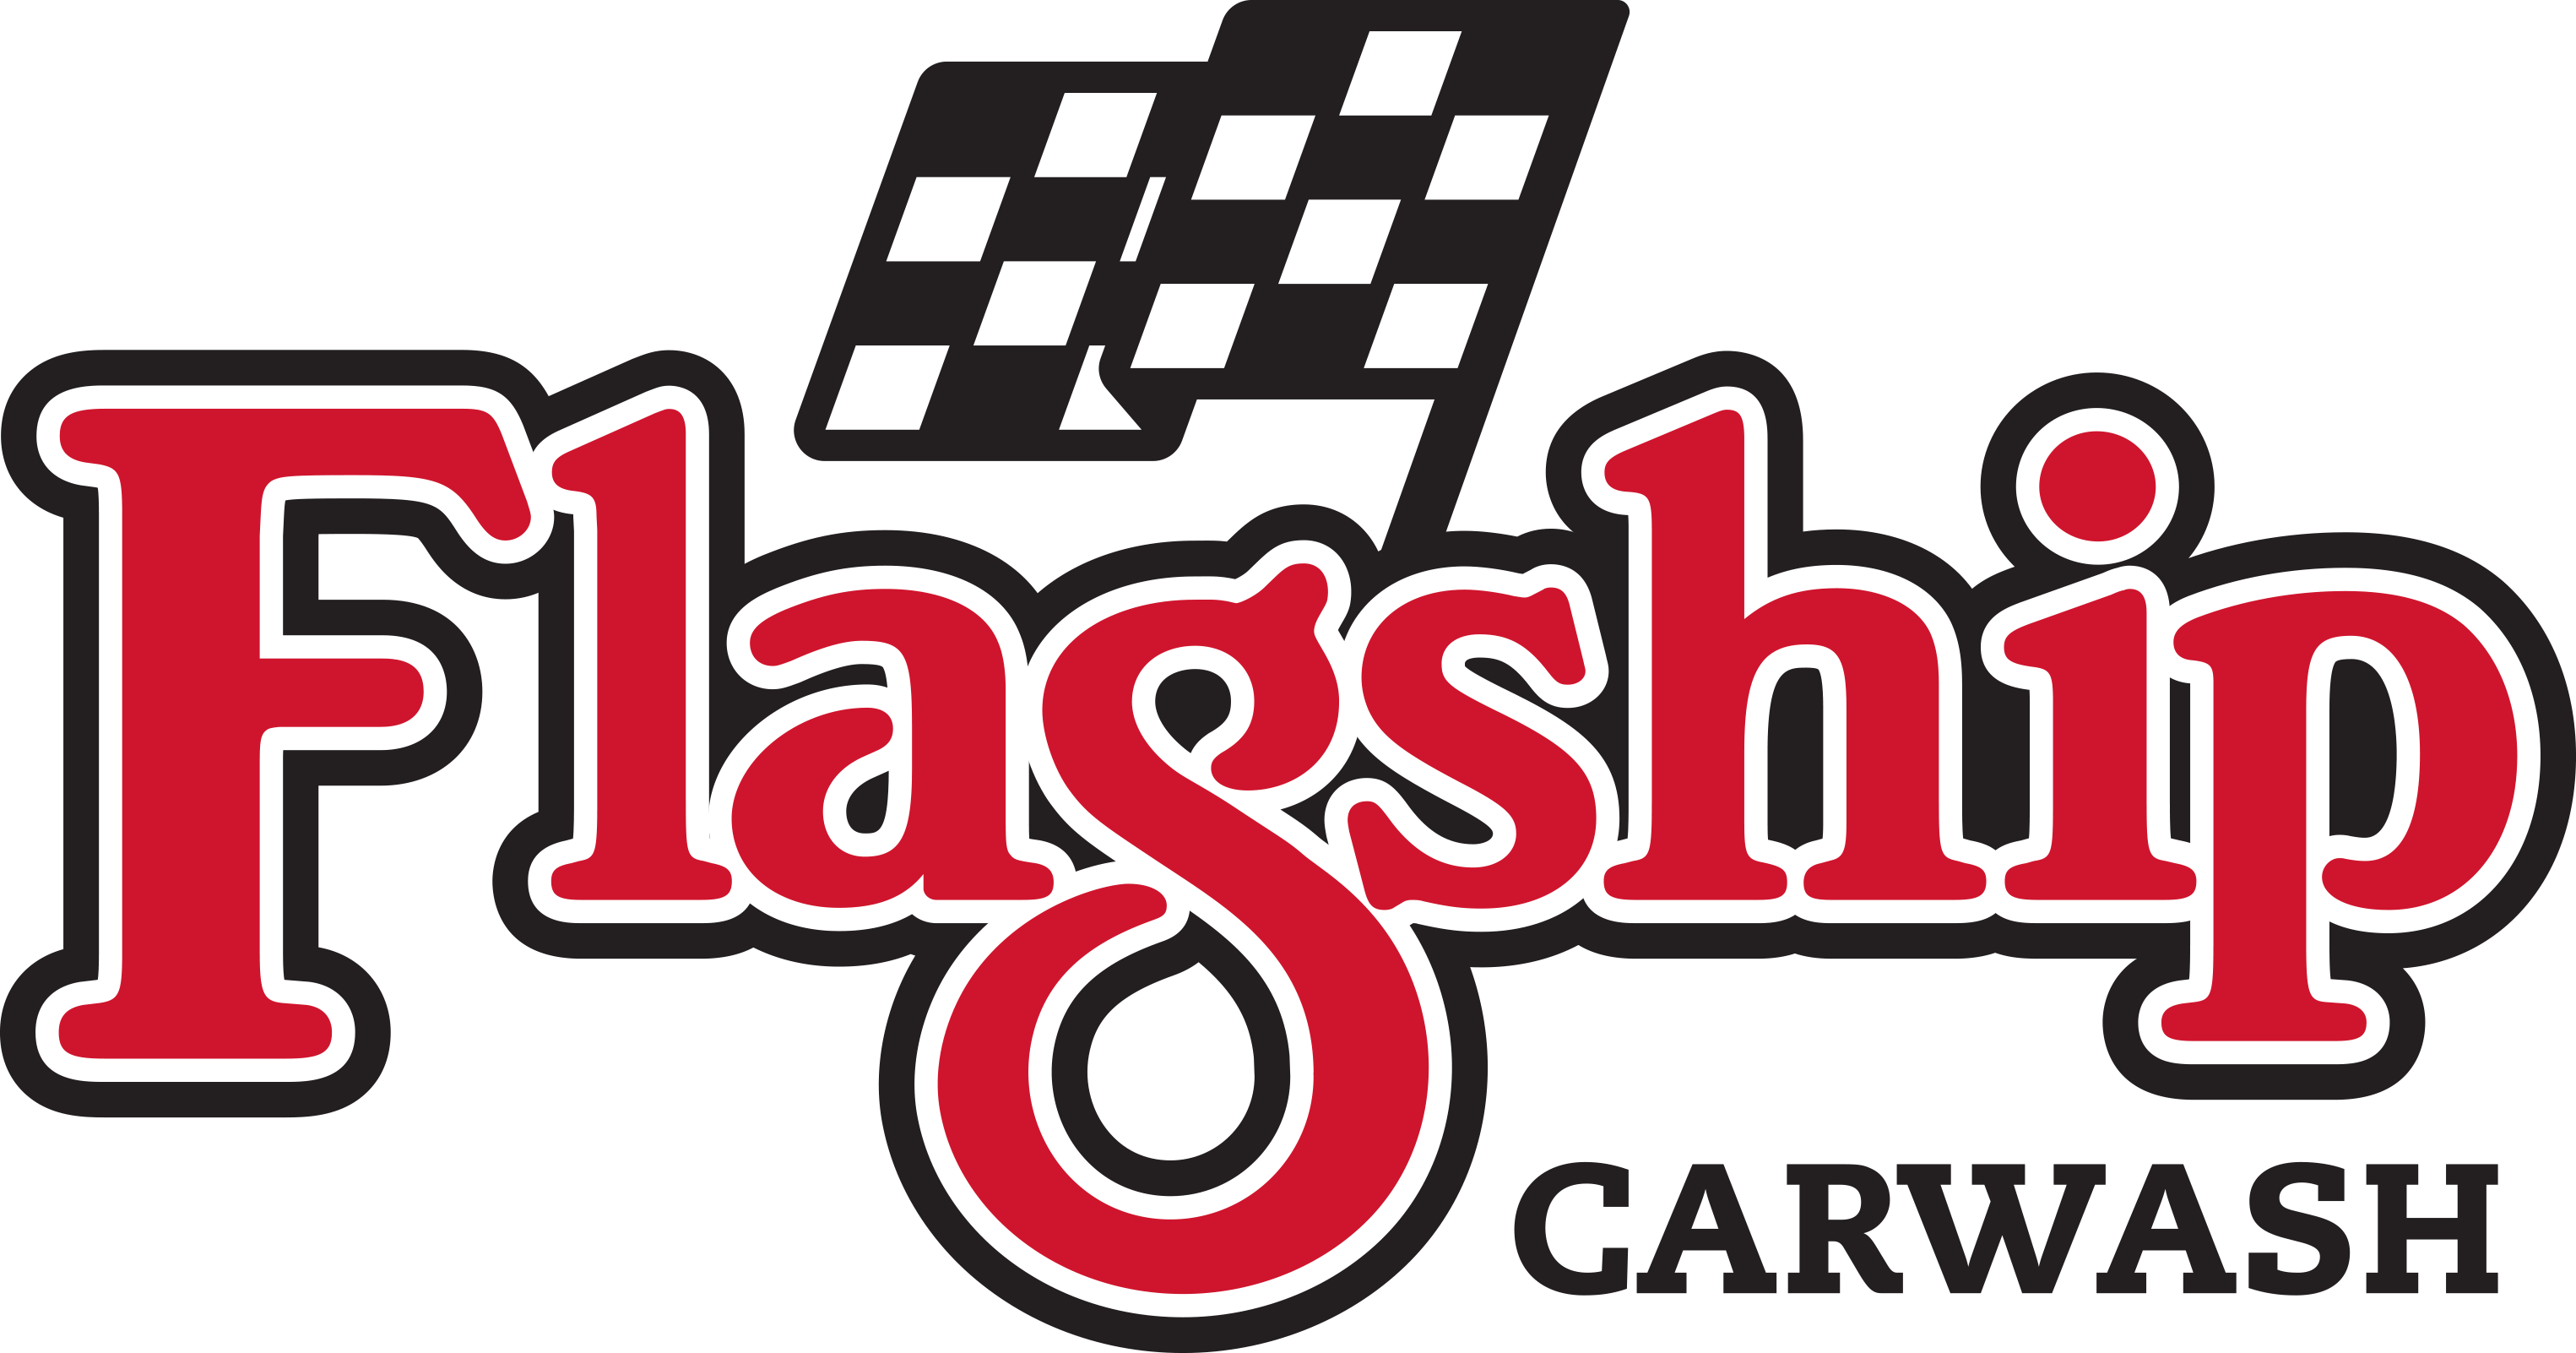 Flagship Carwash Primary Logo